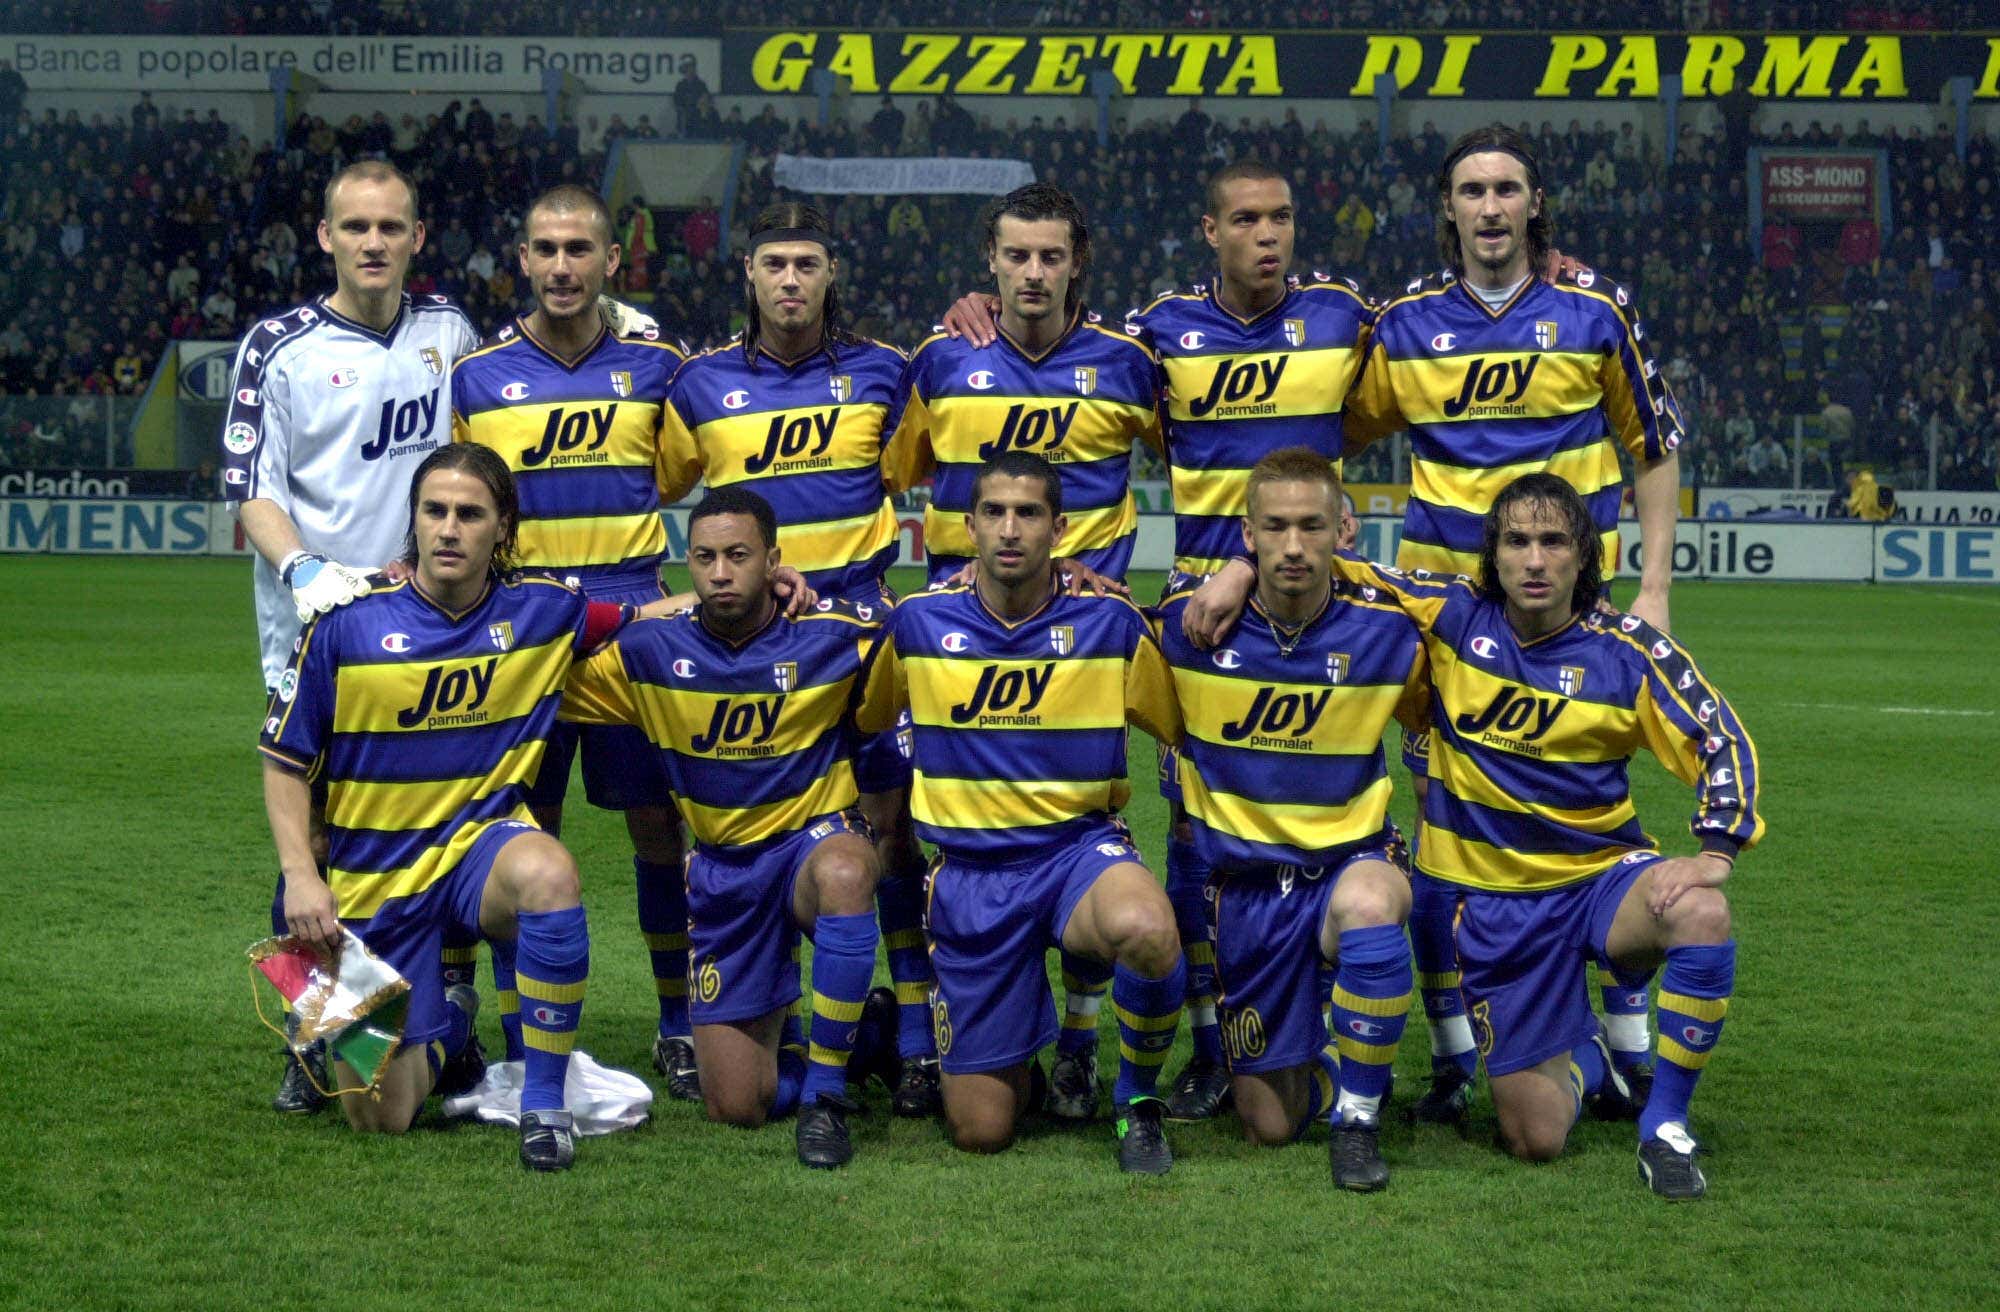 Parma 2001/02